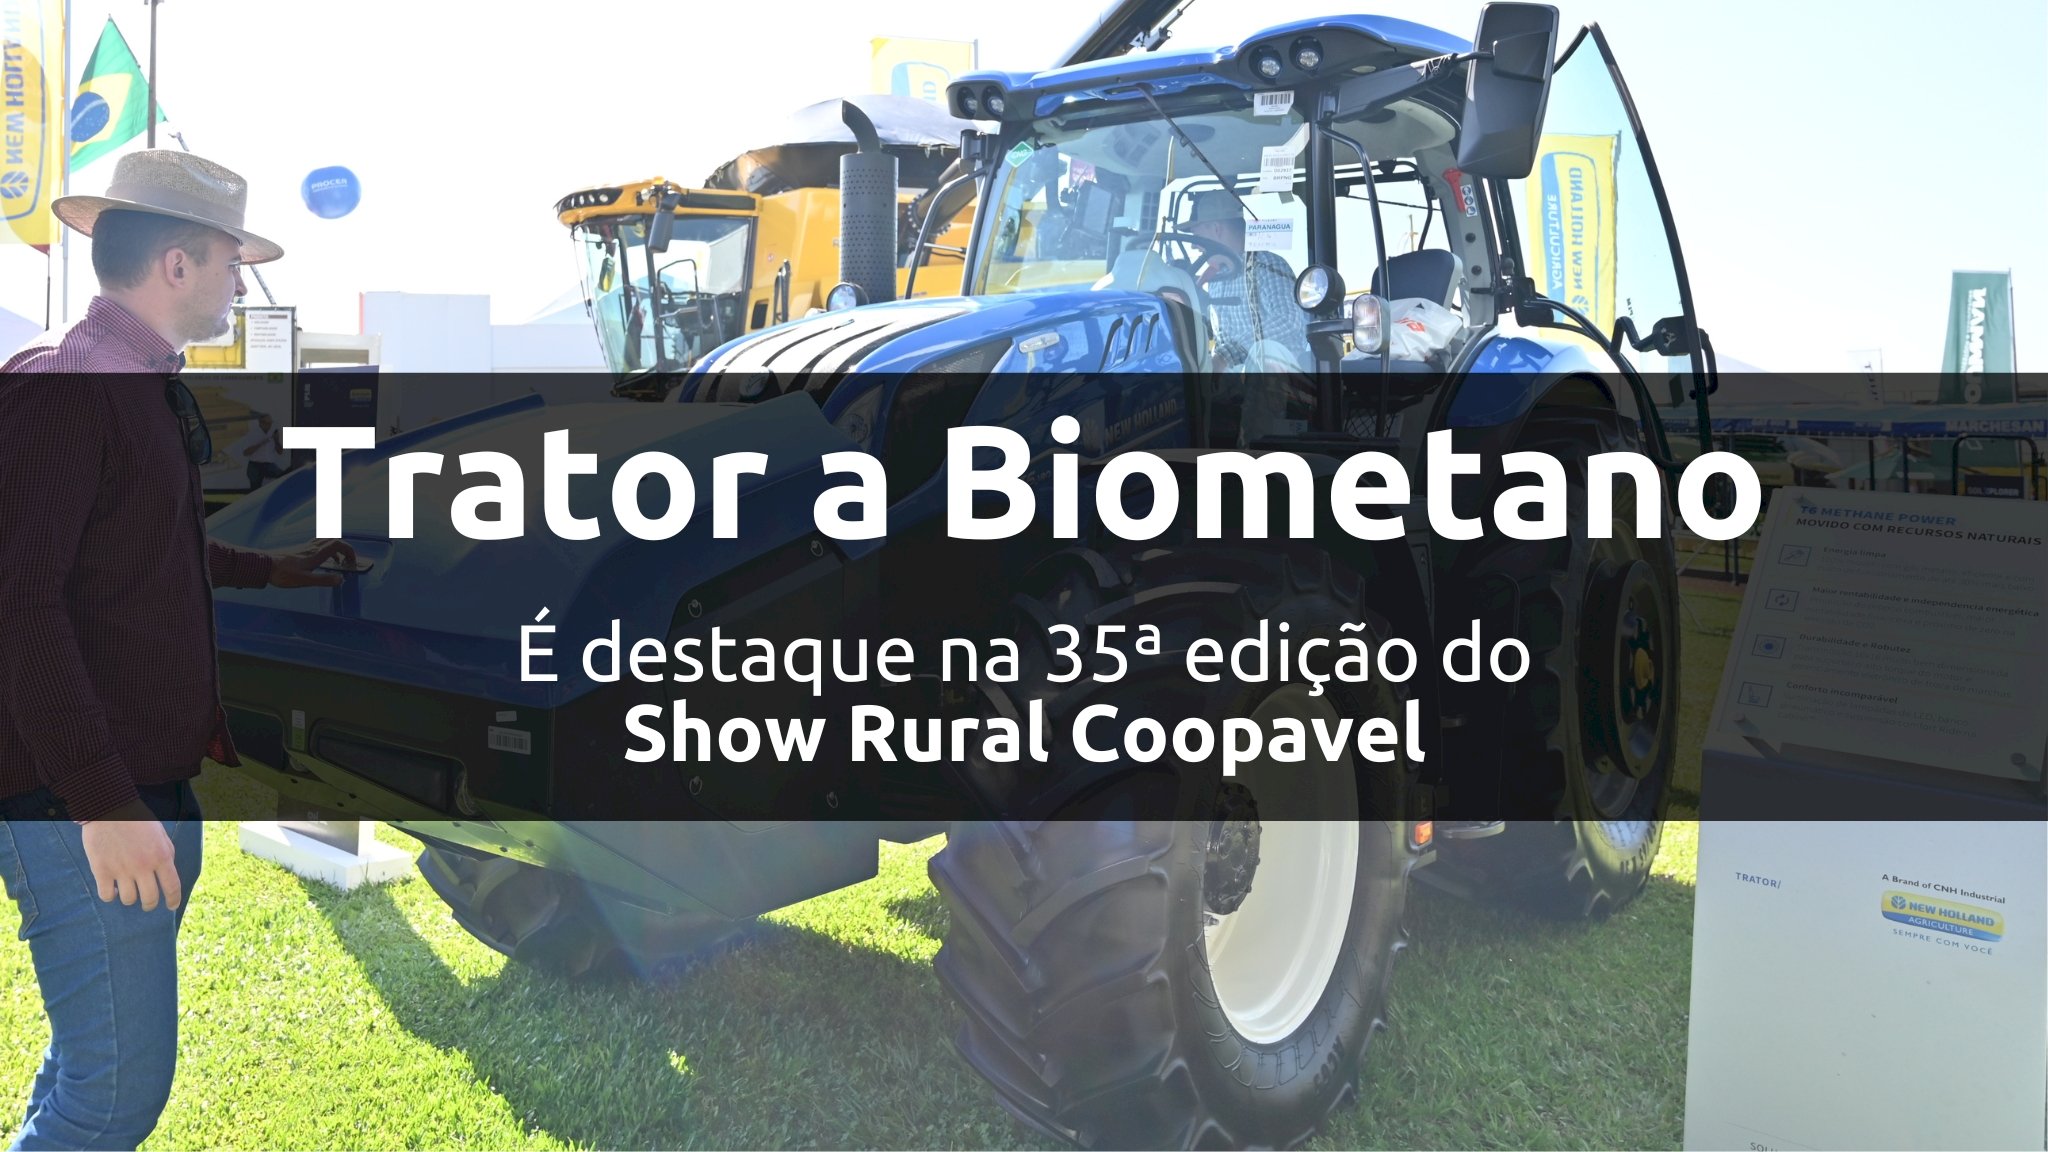 Trator a Biometano é destaque no Show Rural Coopavel